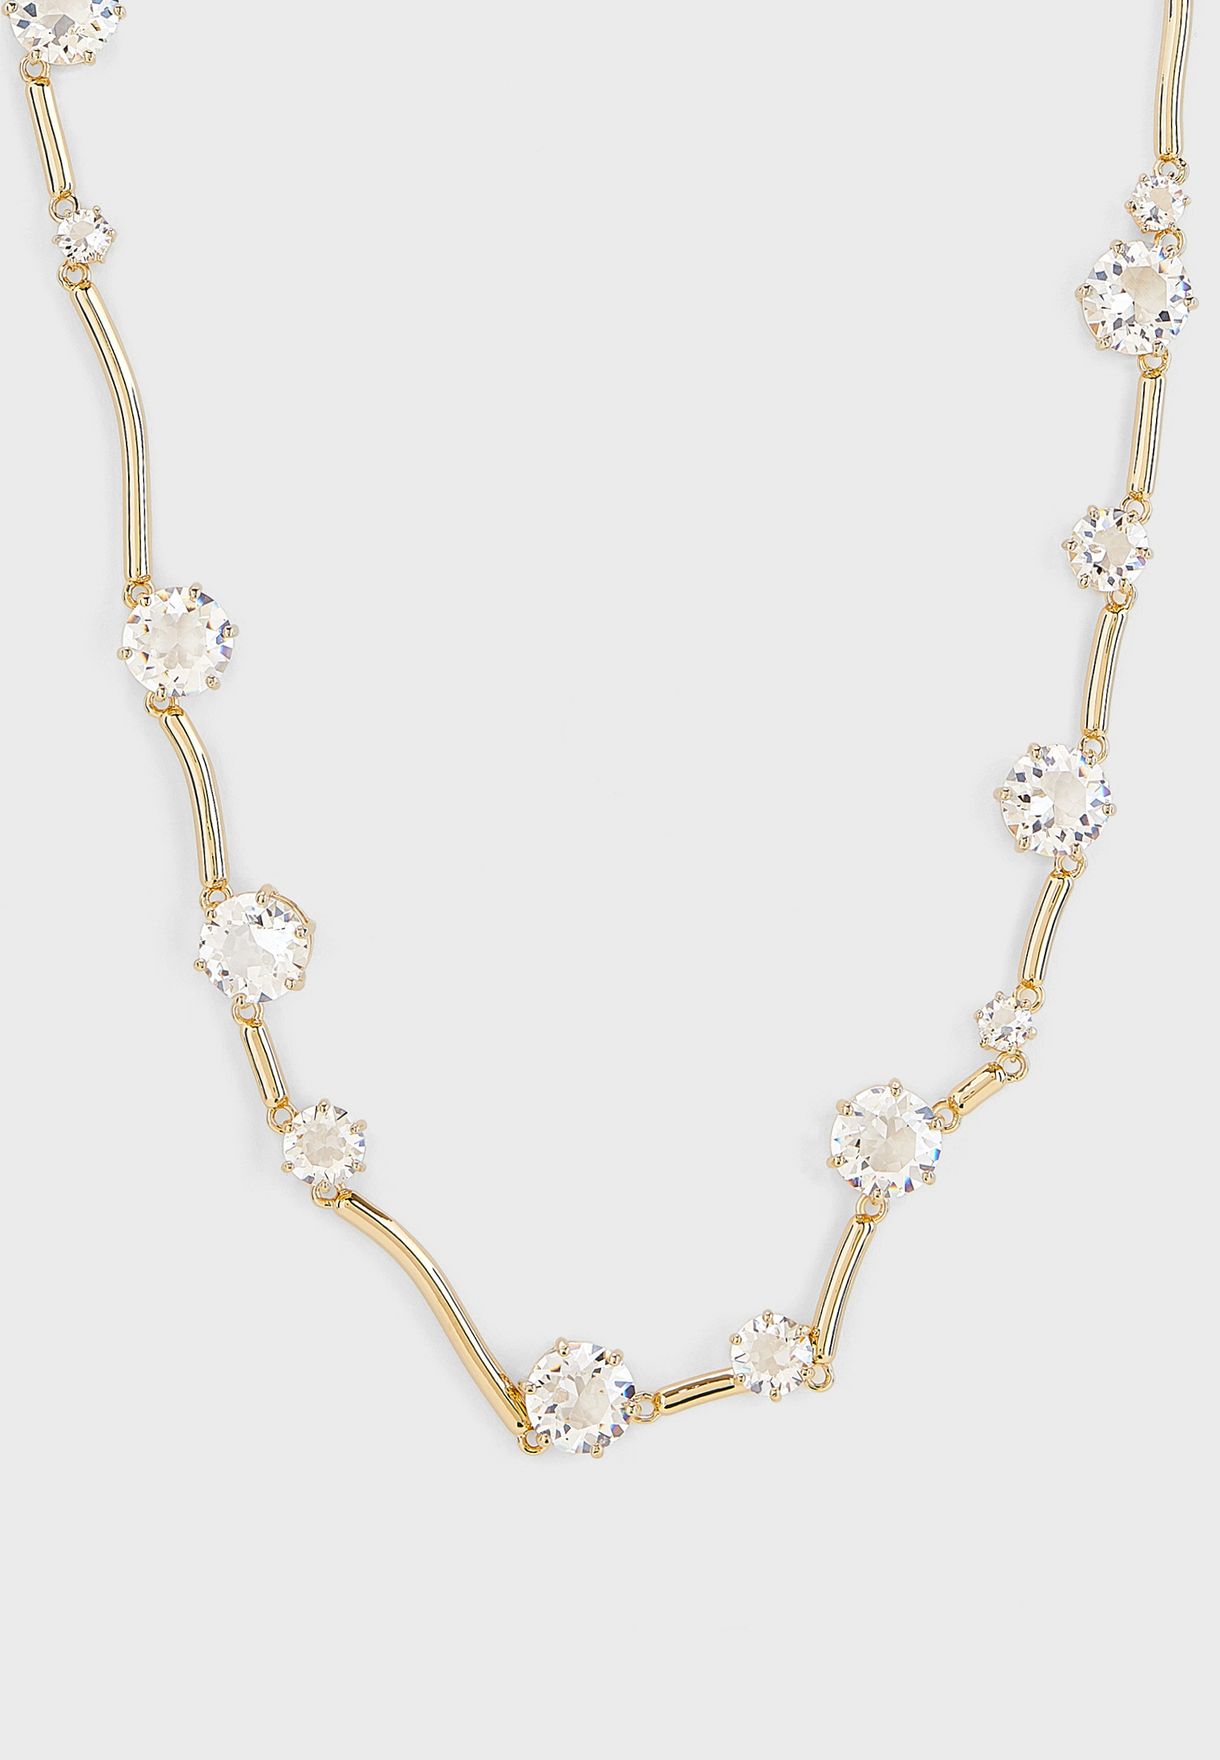 Constella Embellished Necklace      